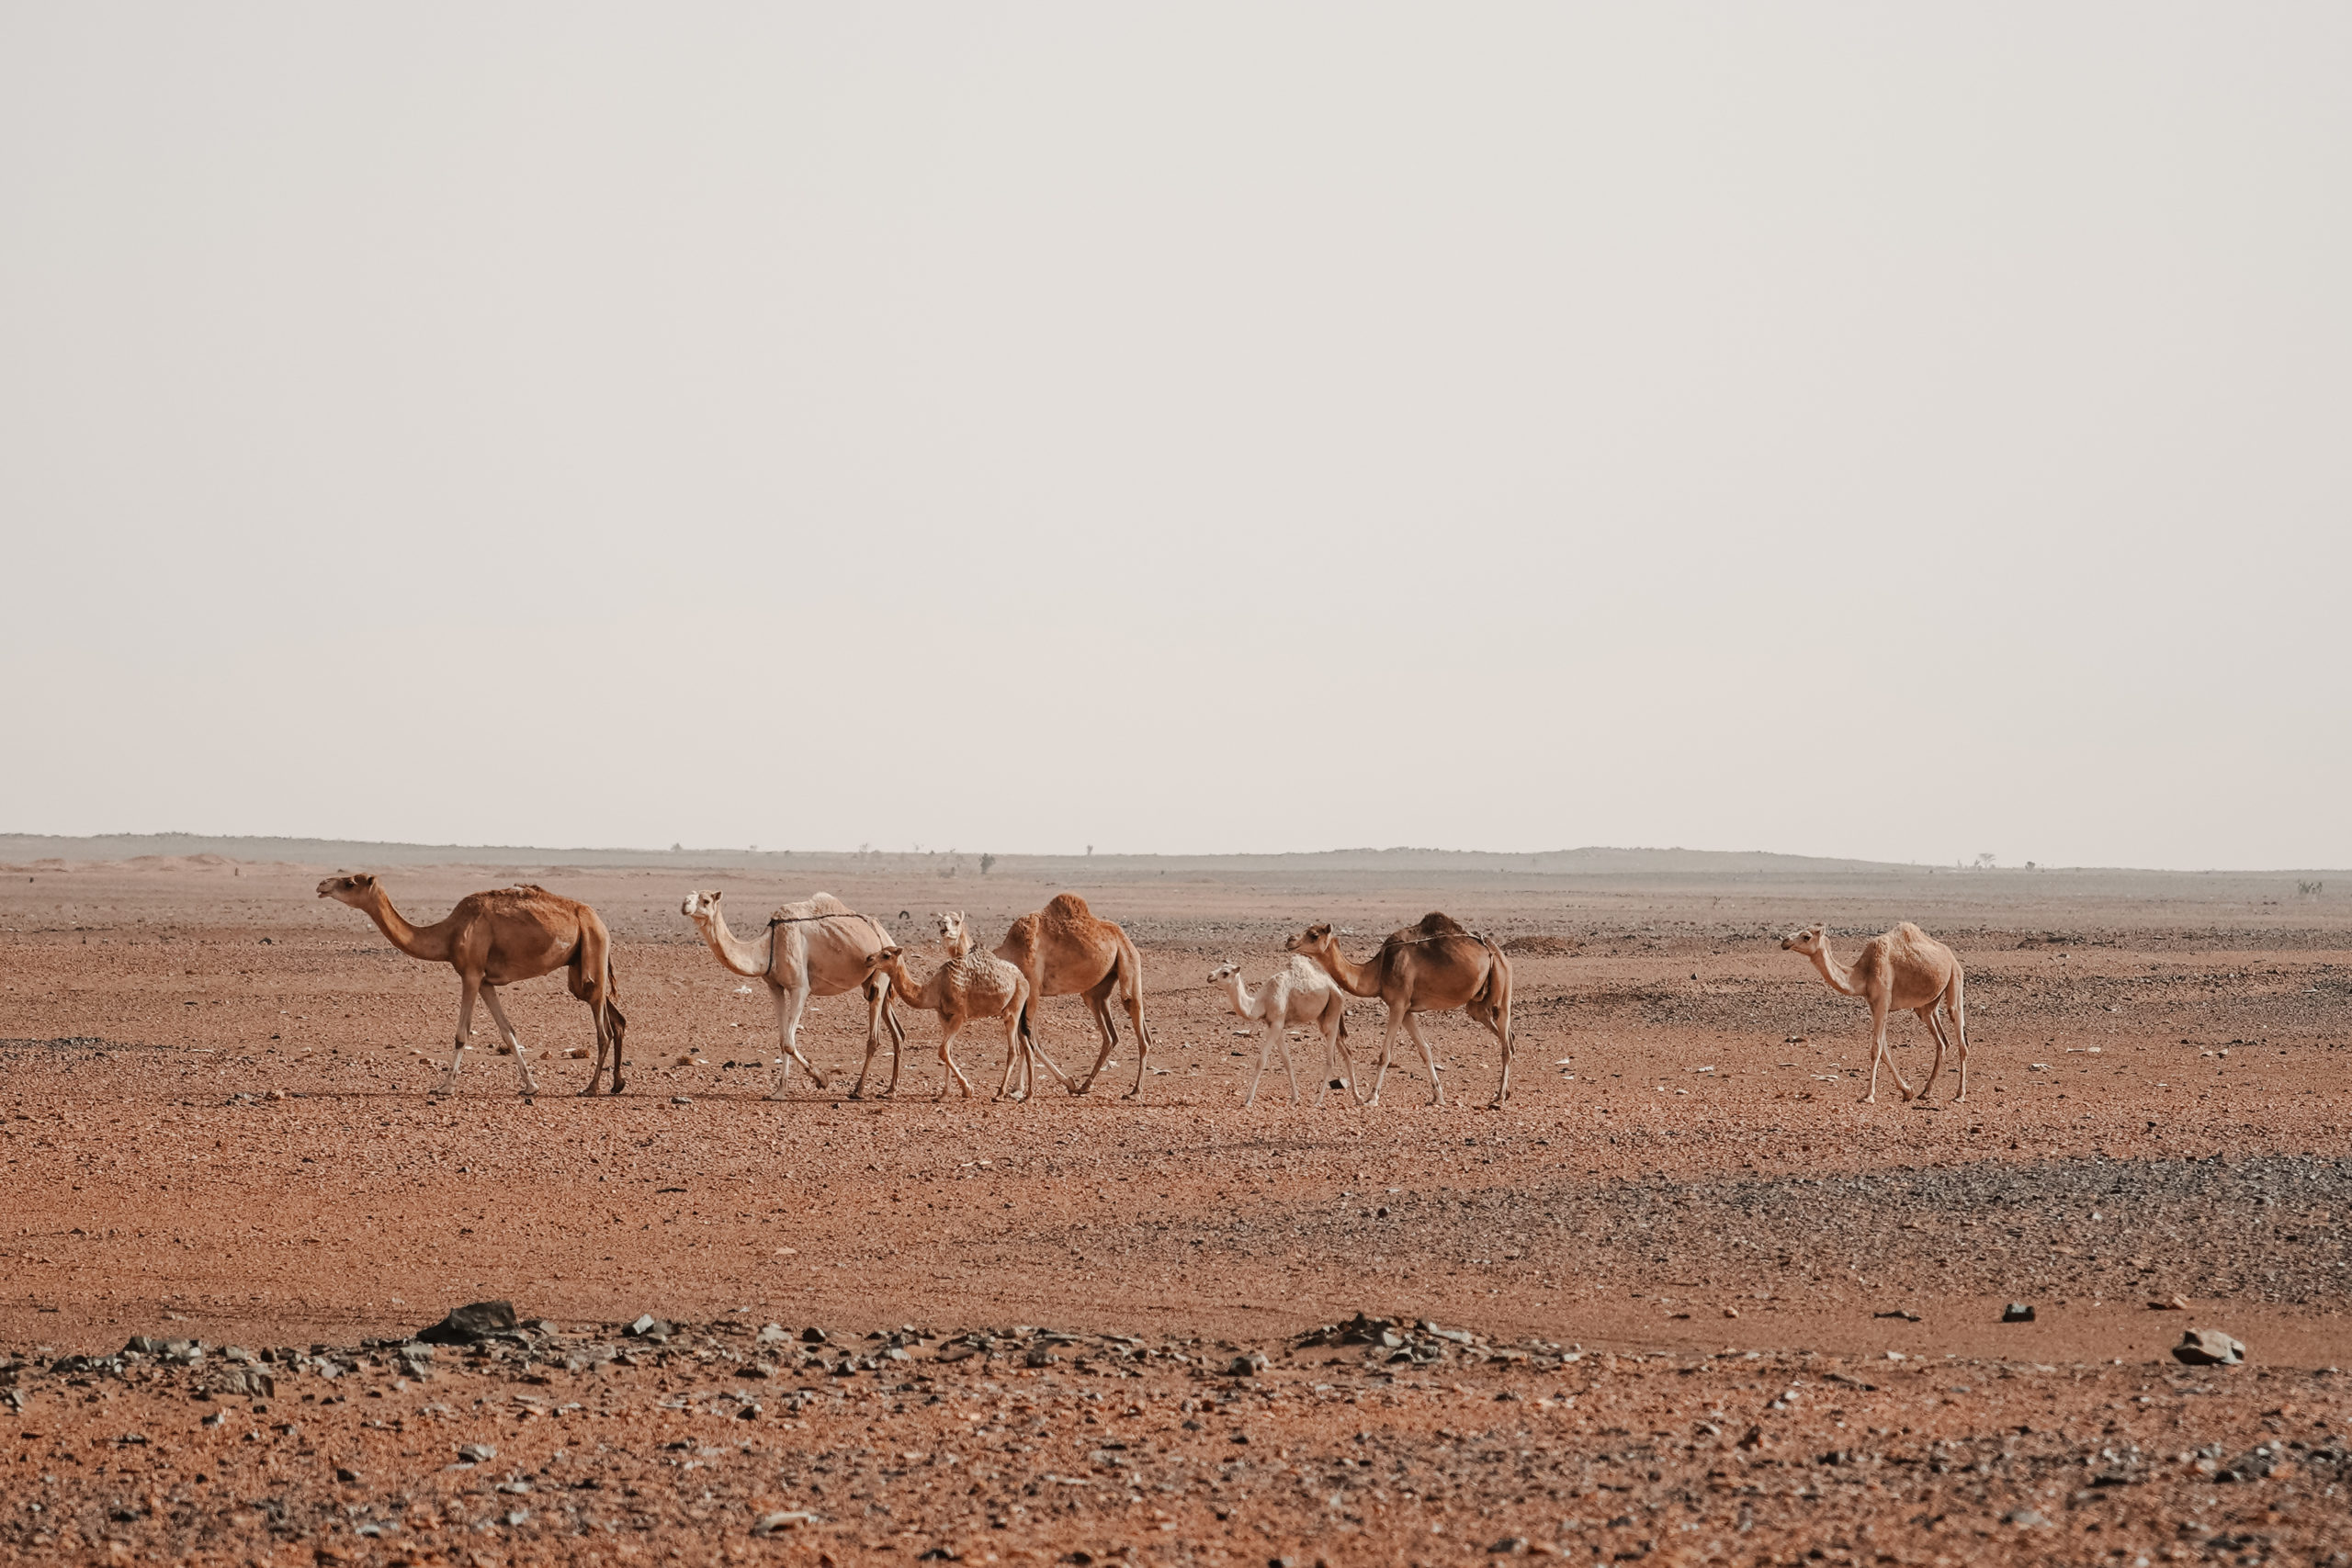 atar désert adrar chinguetti mauritanie road trip blog